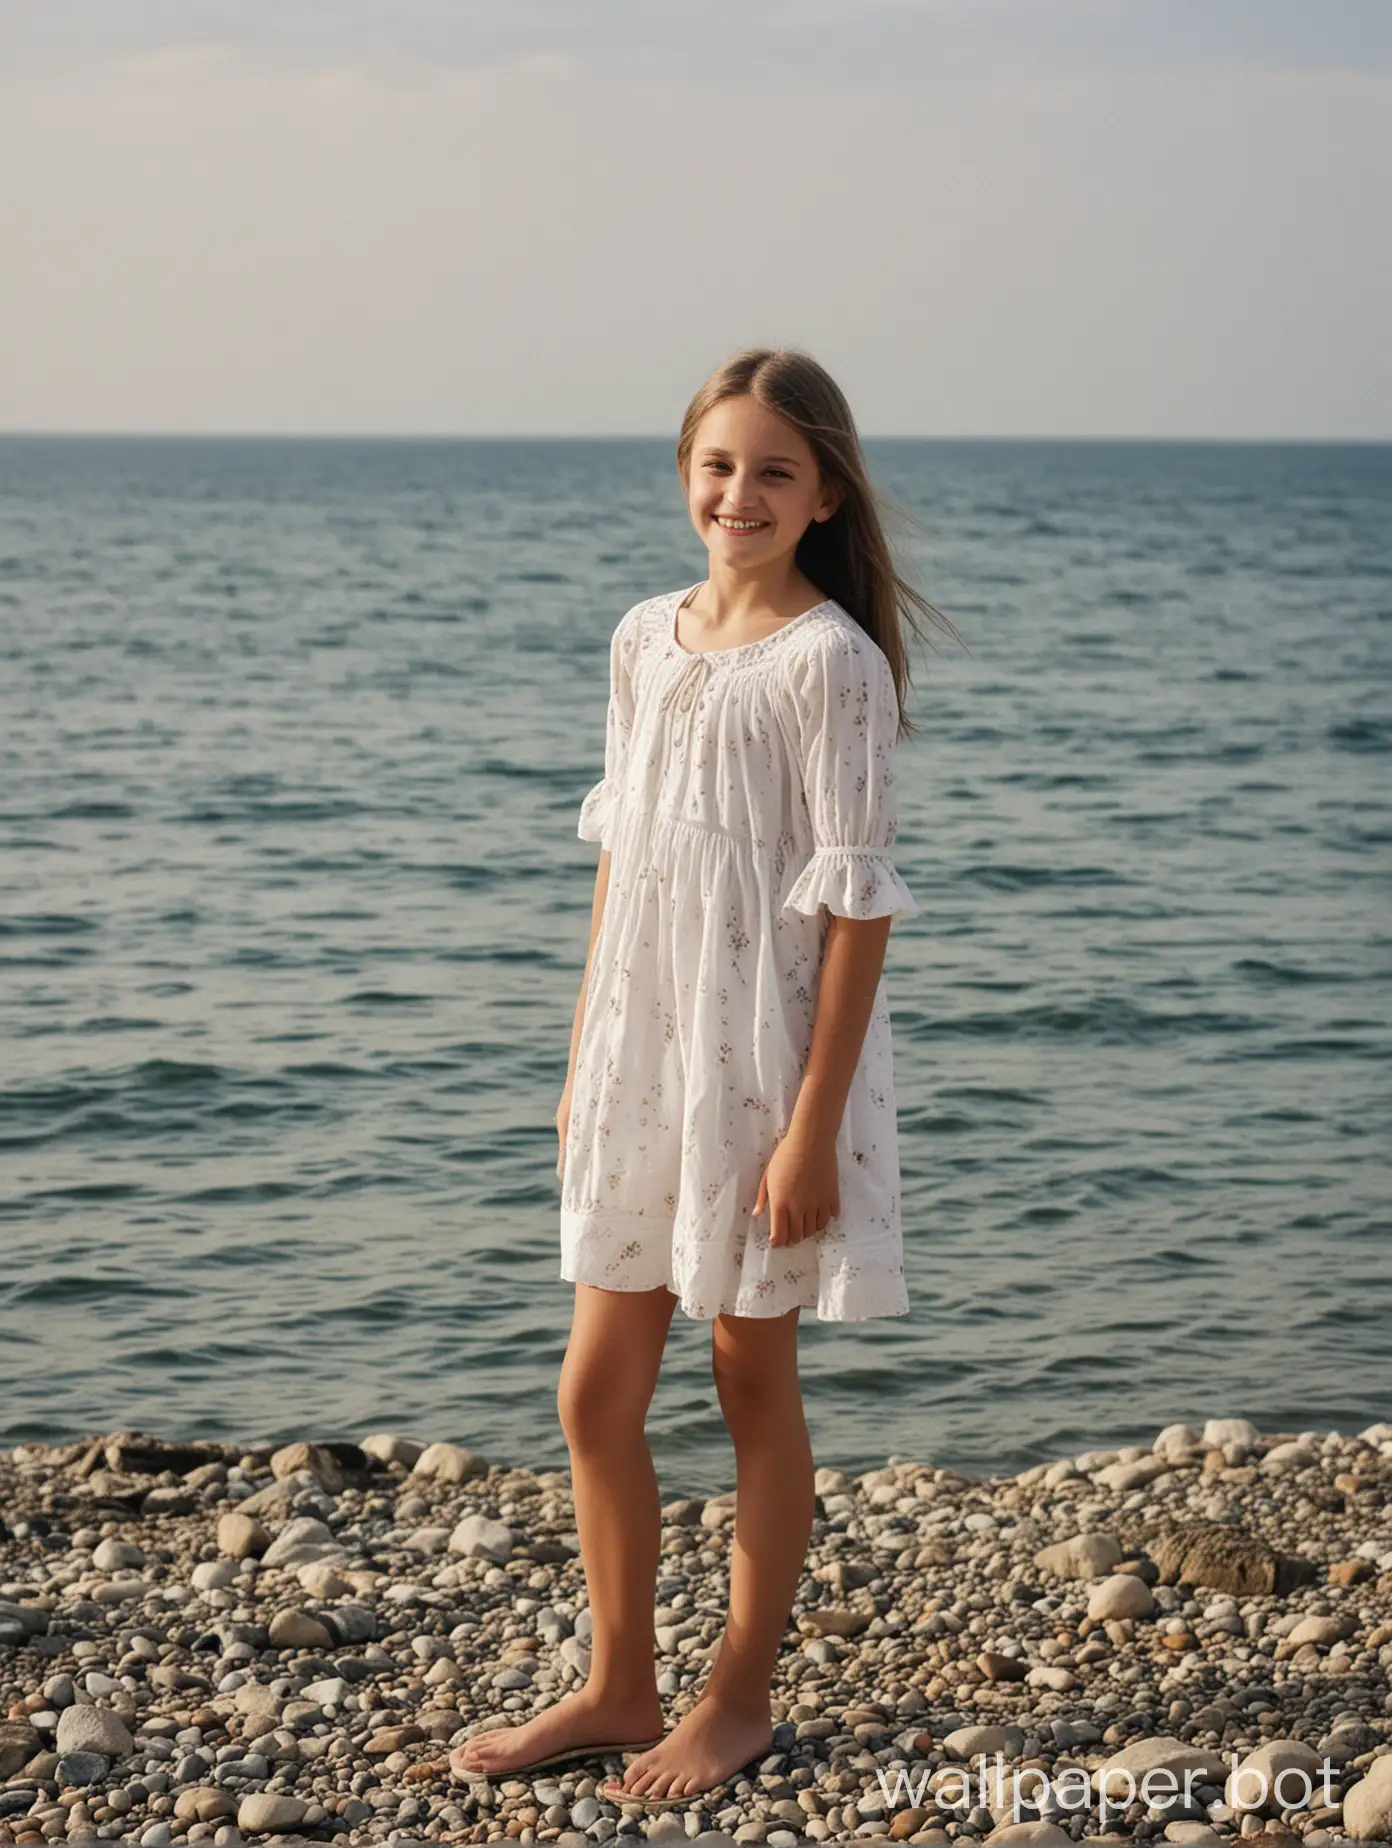 Крым, вид на море, девочка 11 лет, в полный рост, улыбка, лёгкое короткое платье